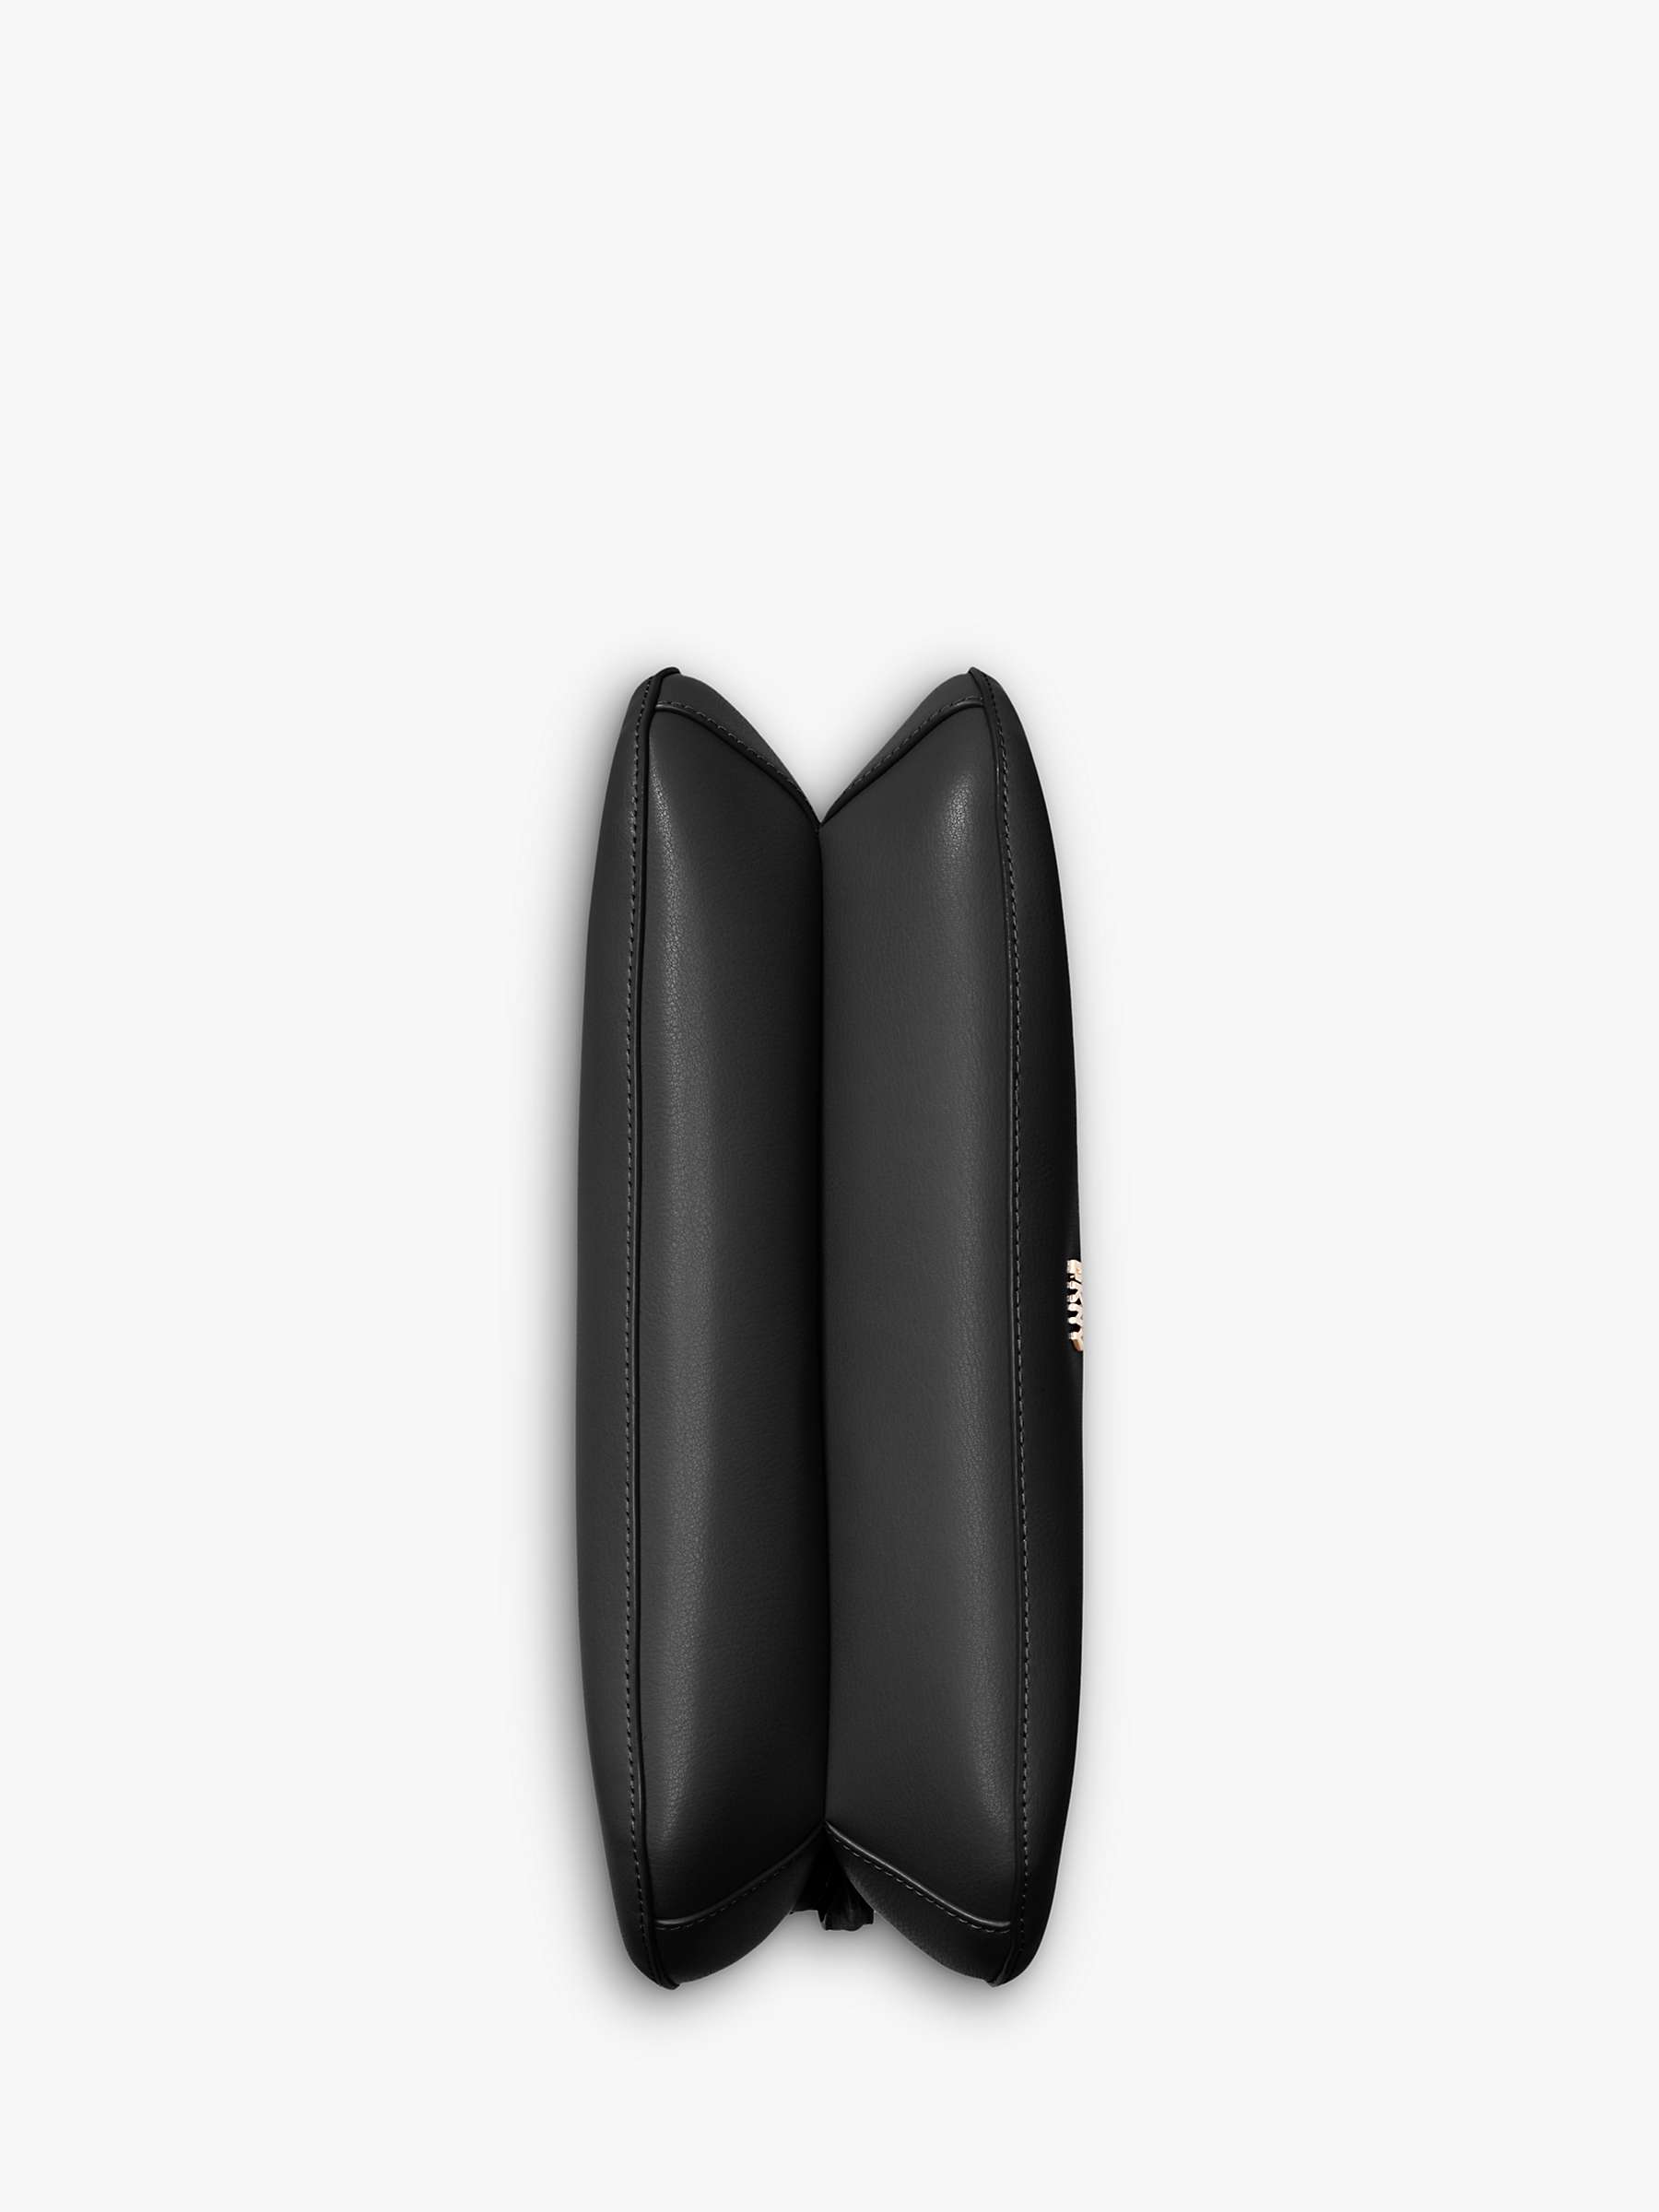 DKNY Hobo Leather Shoulder Bag, Black at John Lewis & Partners